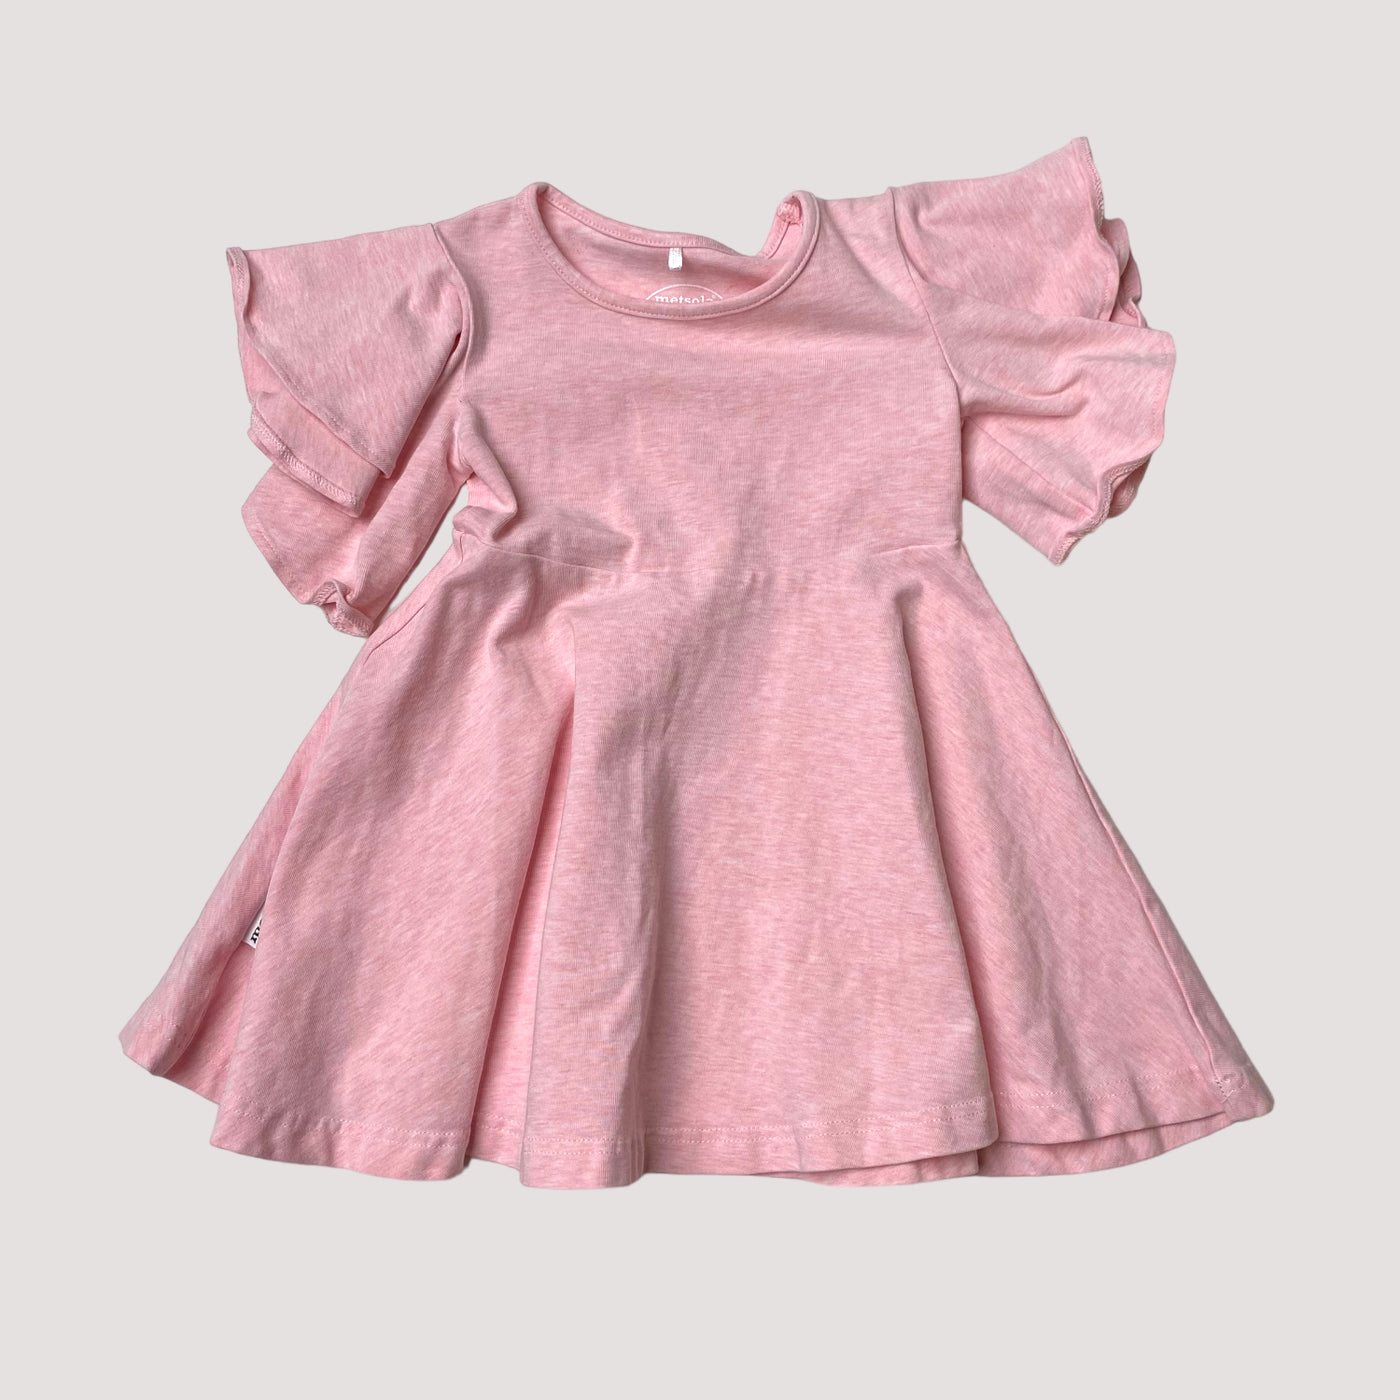 Metsola frill dress, pink | 86/92cm